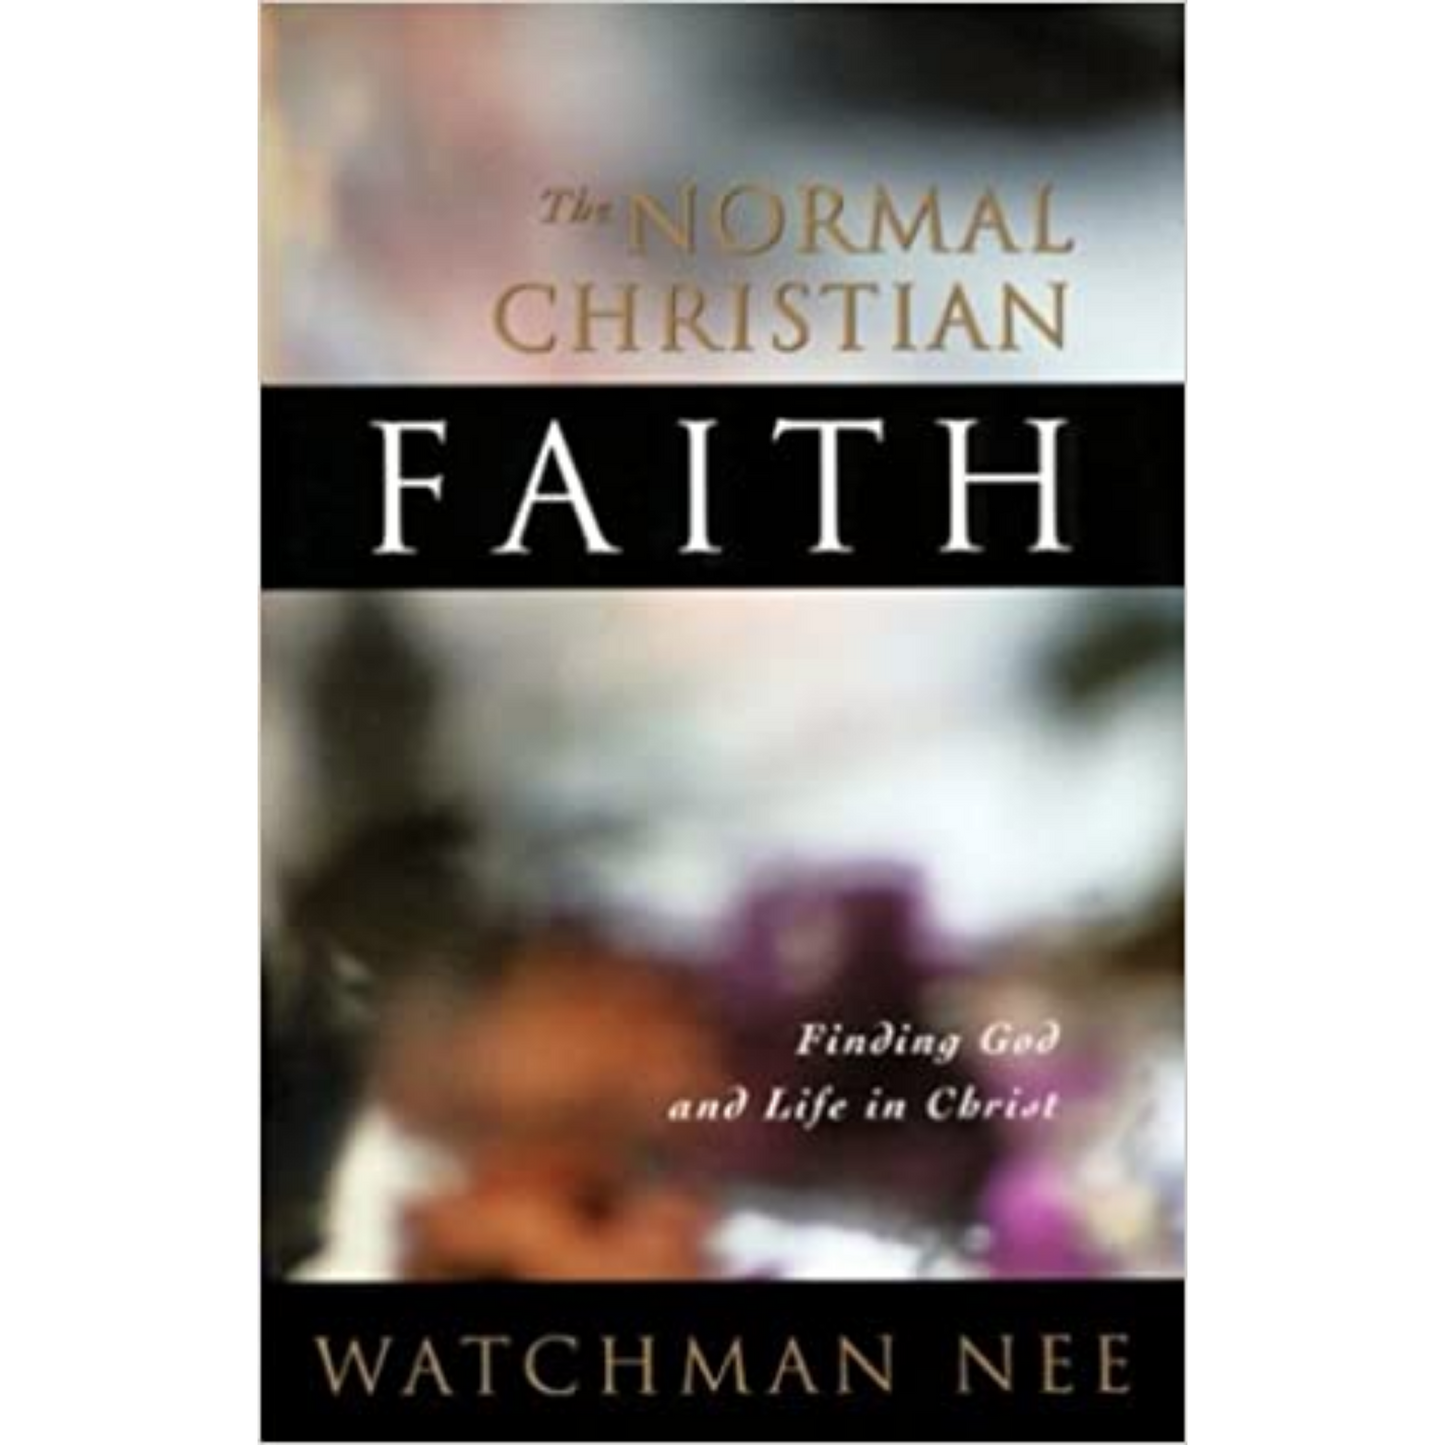 The Normal Christian Faith